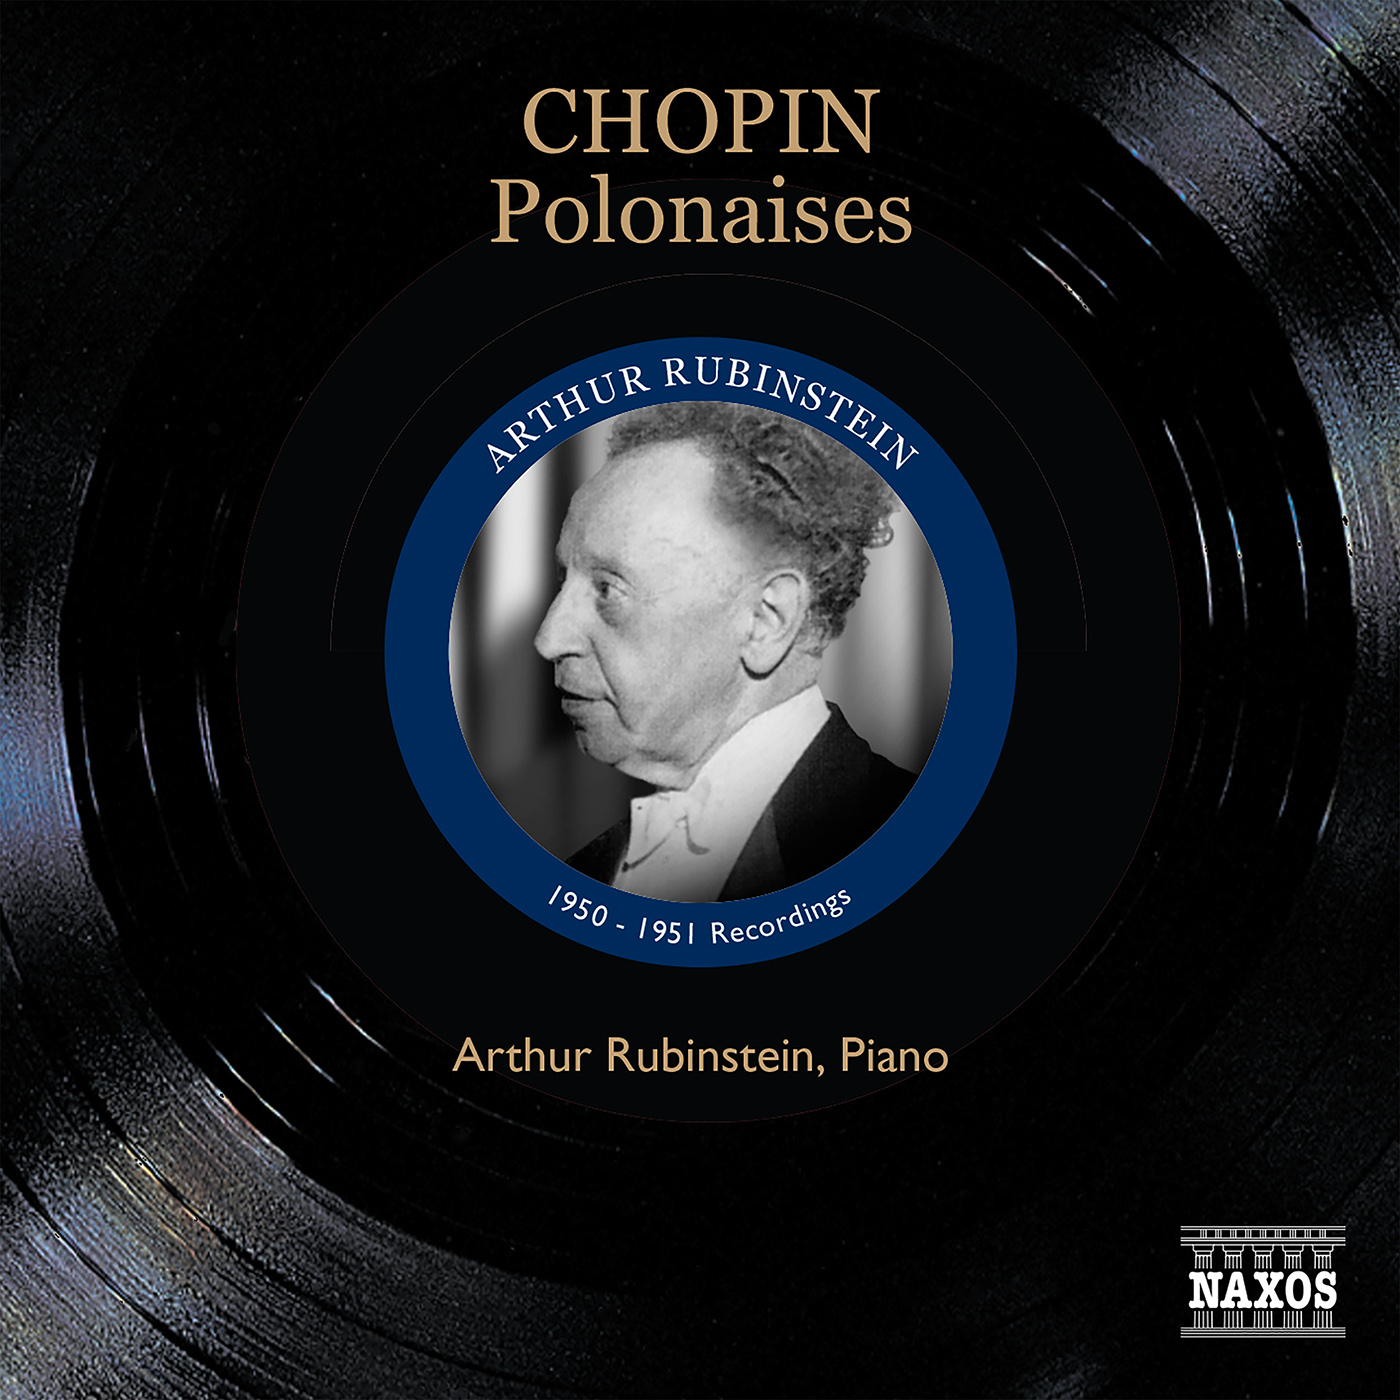 CHOPIN, F.: Polonaises (Rubinstein) (1950-1951)